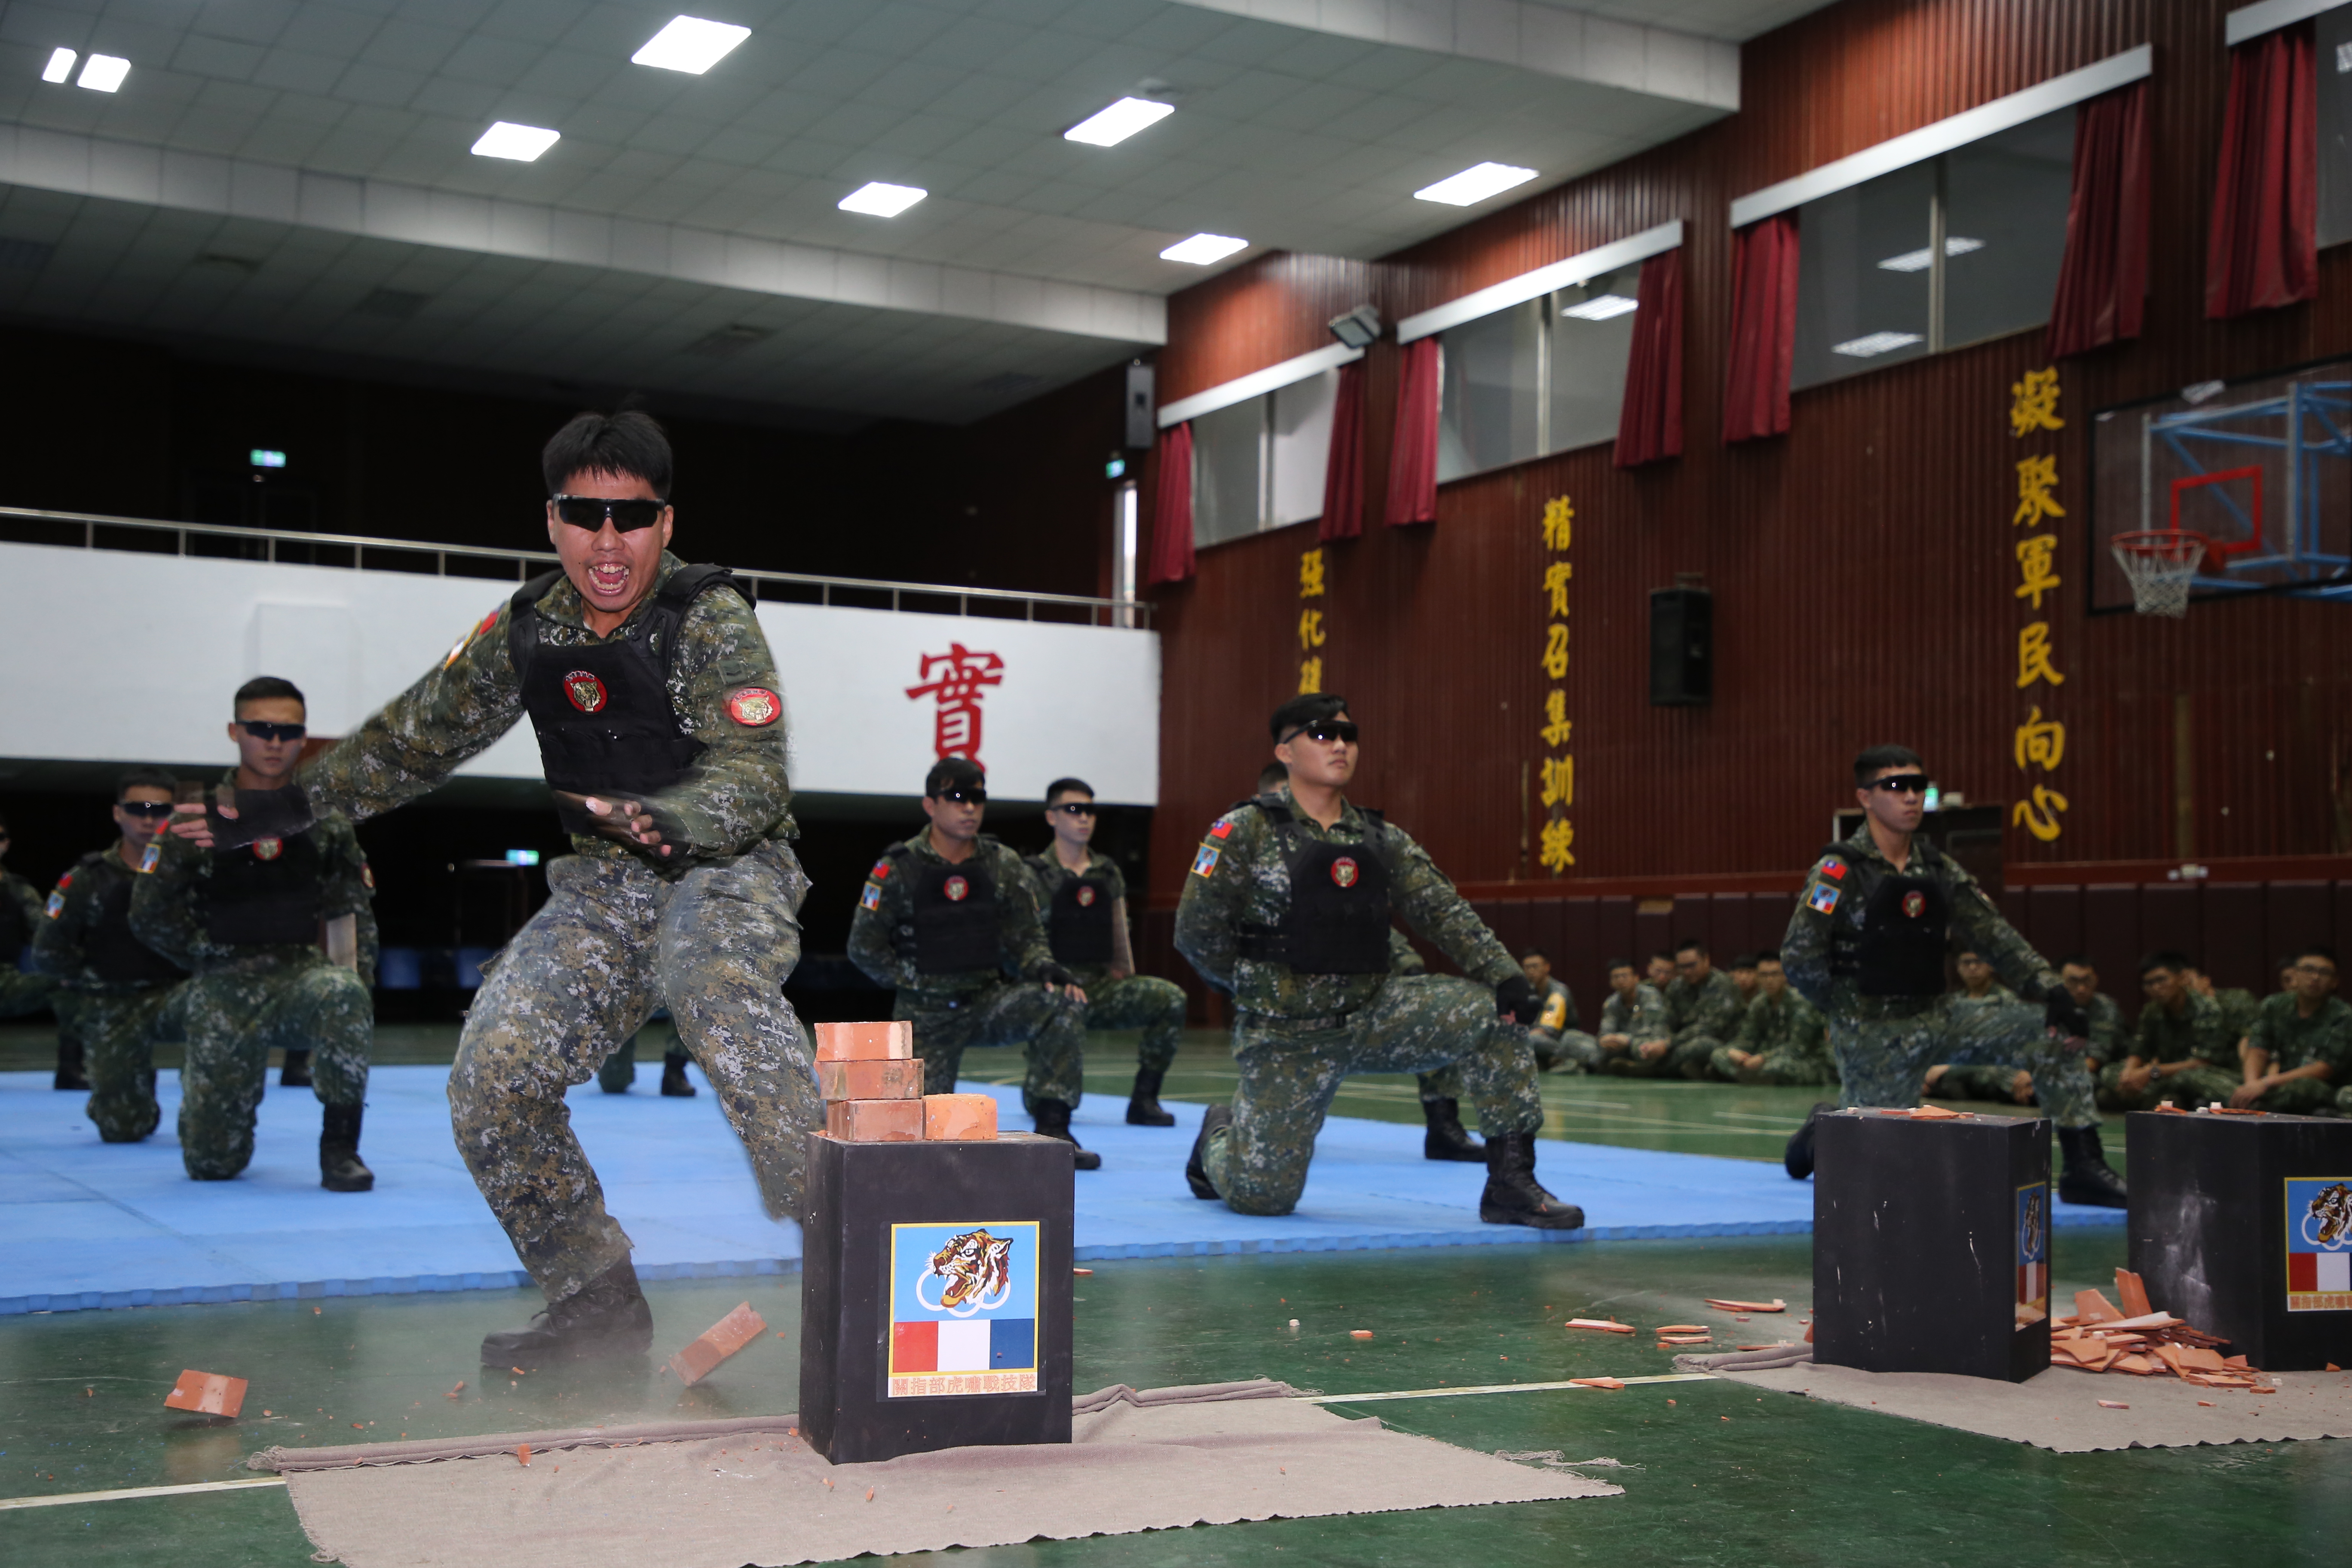 今日活動特別安排「虎嘯戰技隊」進行操演與戰力展示，充分展現國軍官兵英勇剽悍的形象。